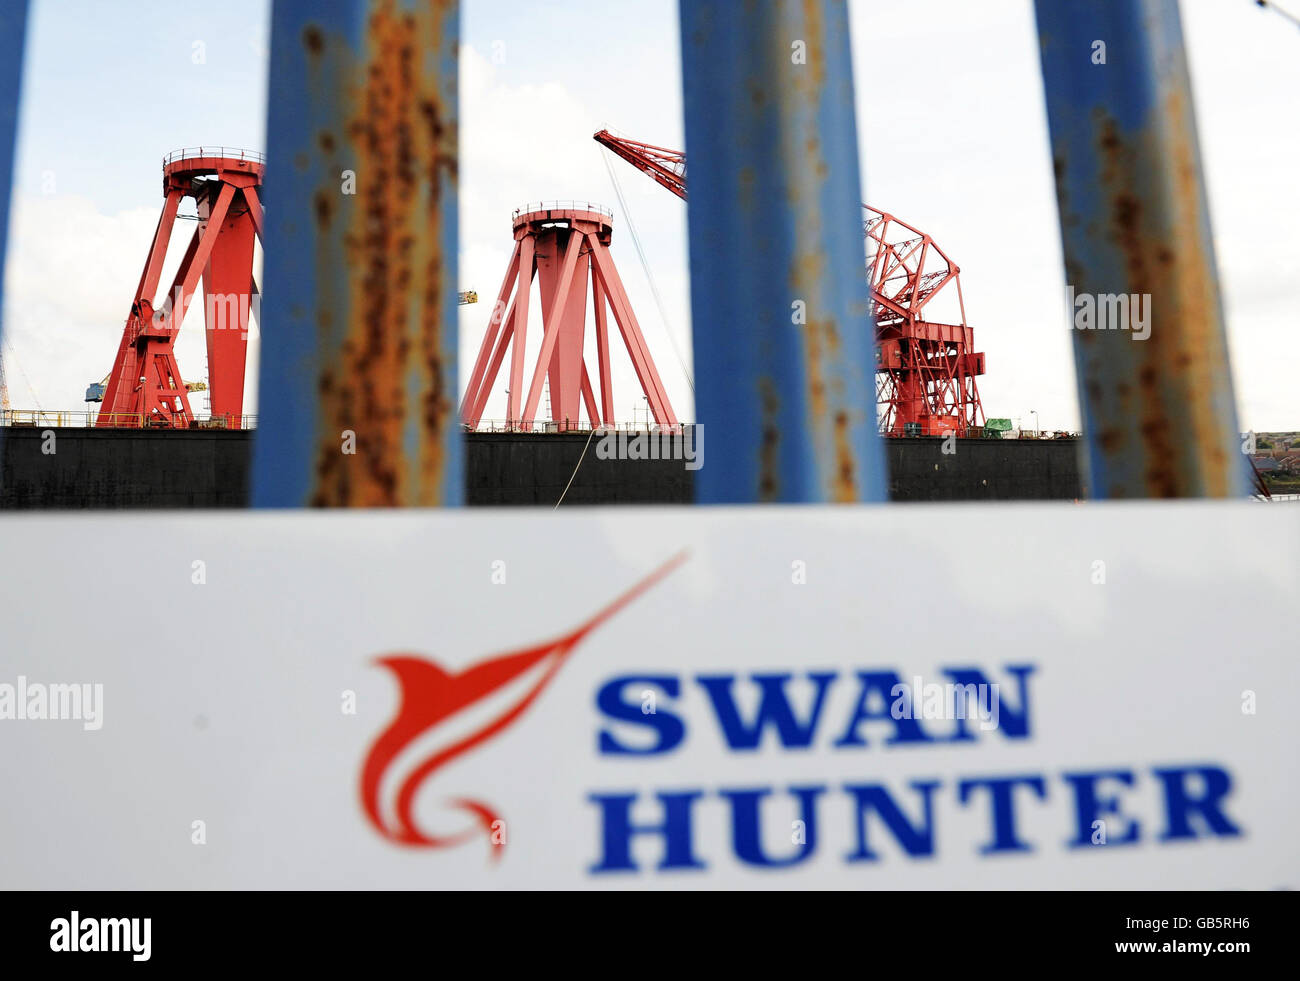 EIGENSTÄNDIGES Foto. Die Swan Hunter Werft am Fluss Tyne. Die Kraniche werden langsam in der ruhenden Werft abgebaut, die einst für die Beschäftigung von über 1000 Arbeitern auf dem Fluss Tyne berühmt war. Stockfoto